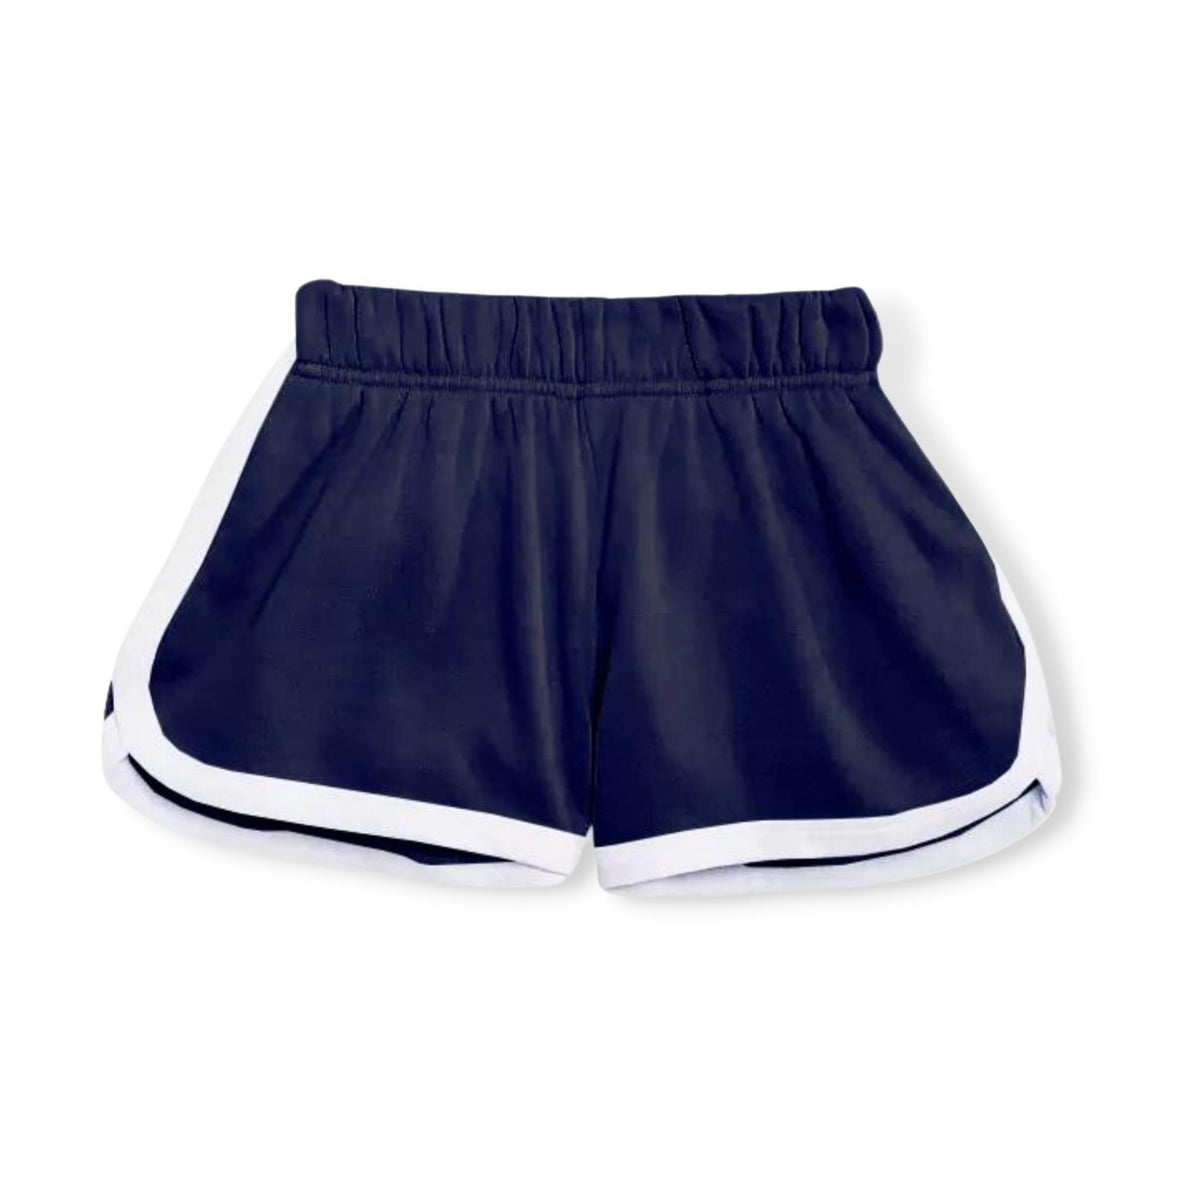 KatieJNYC Navy Kimmie Shorts - a Spirit Animal - shorts $120-$150 $30-$60 active Jun 2022